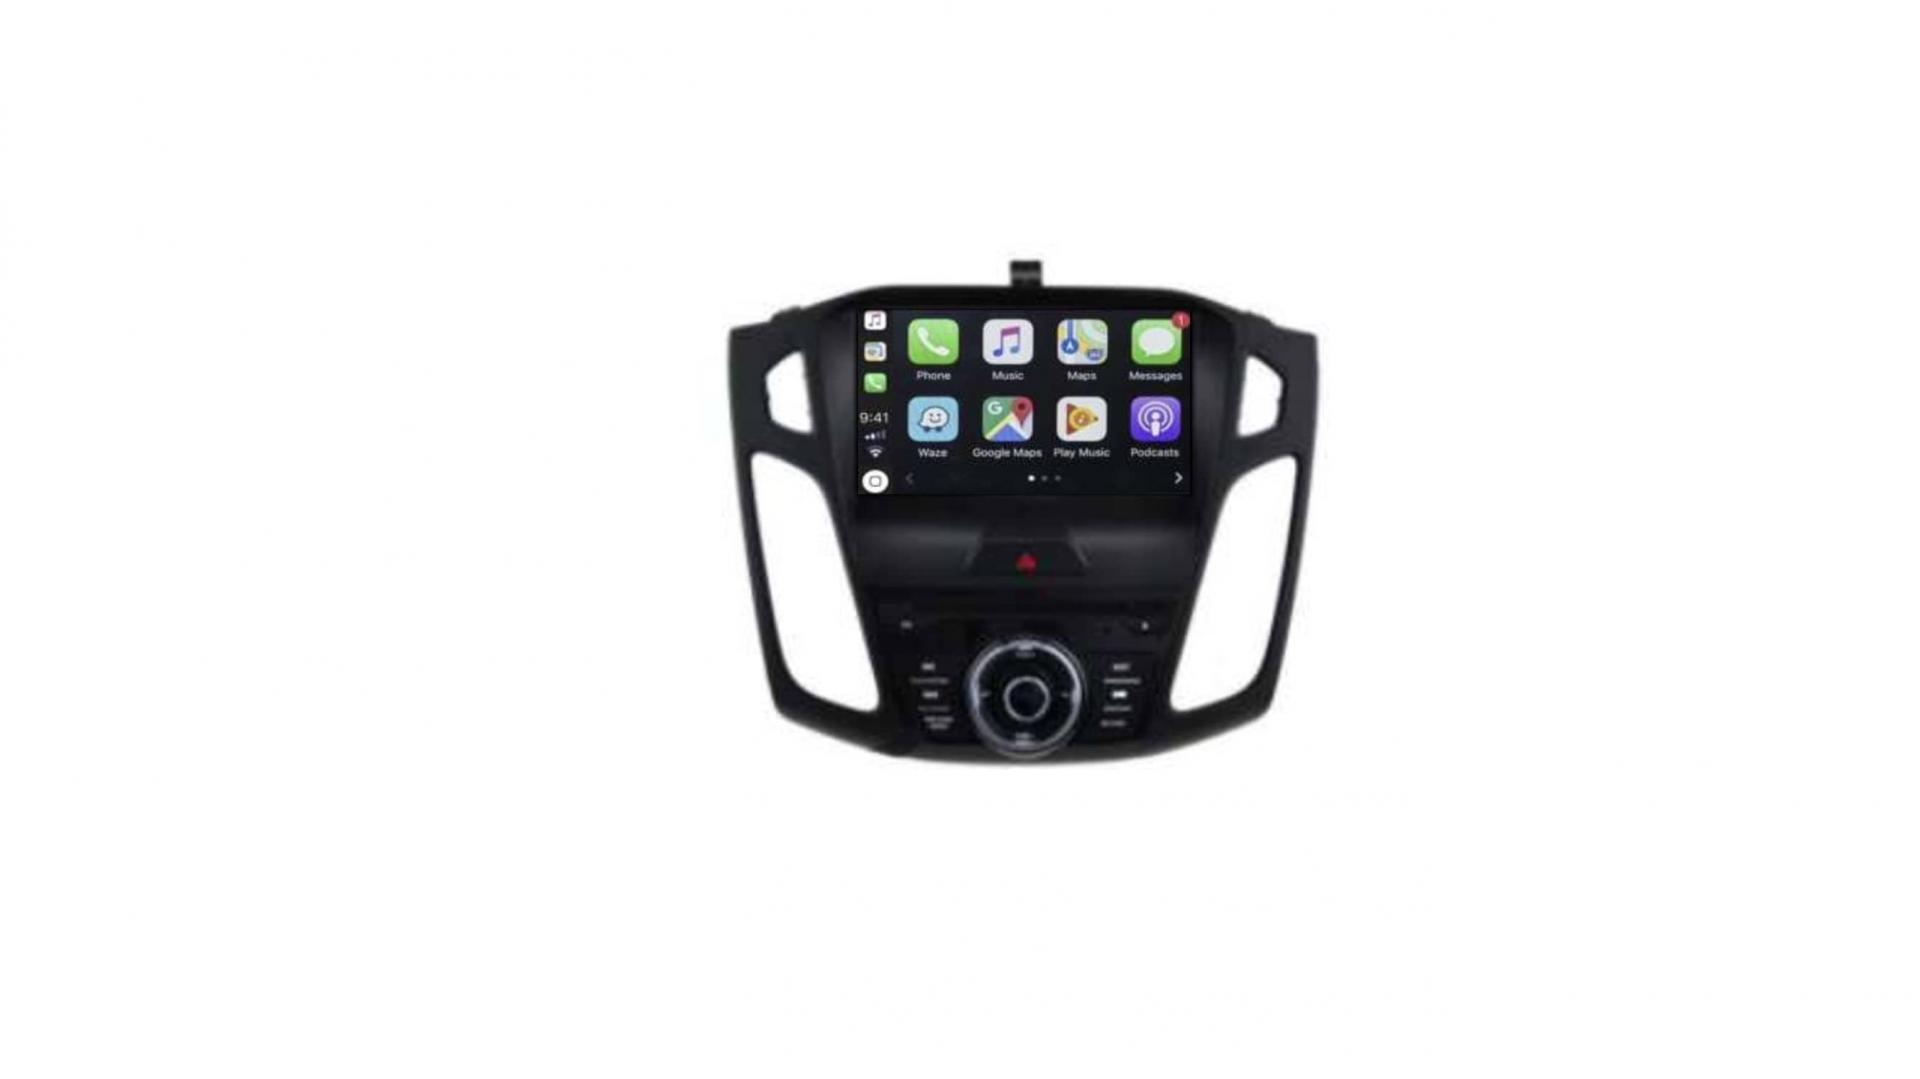 Autoradio androi d auto carplay gps bluetooth ford focus a partir de 2015 1